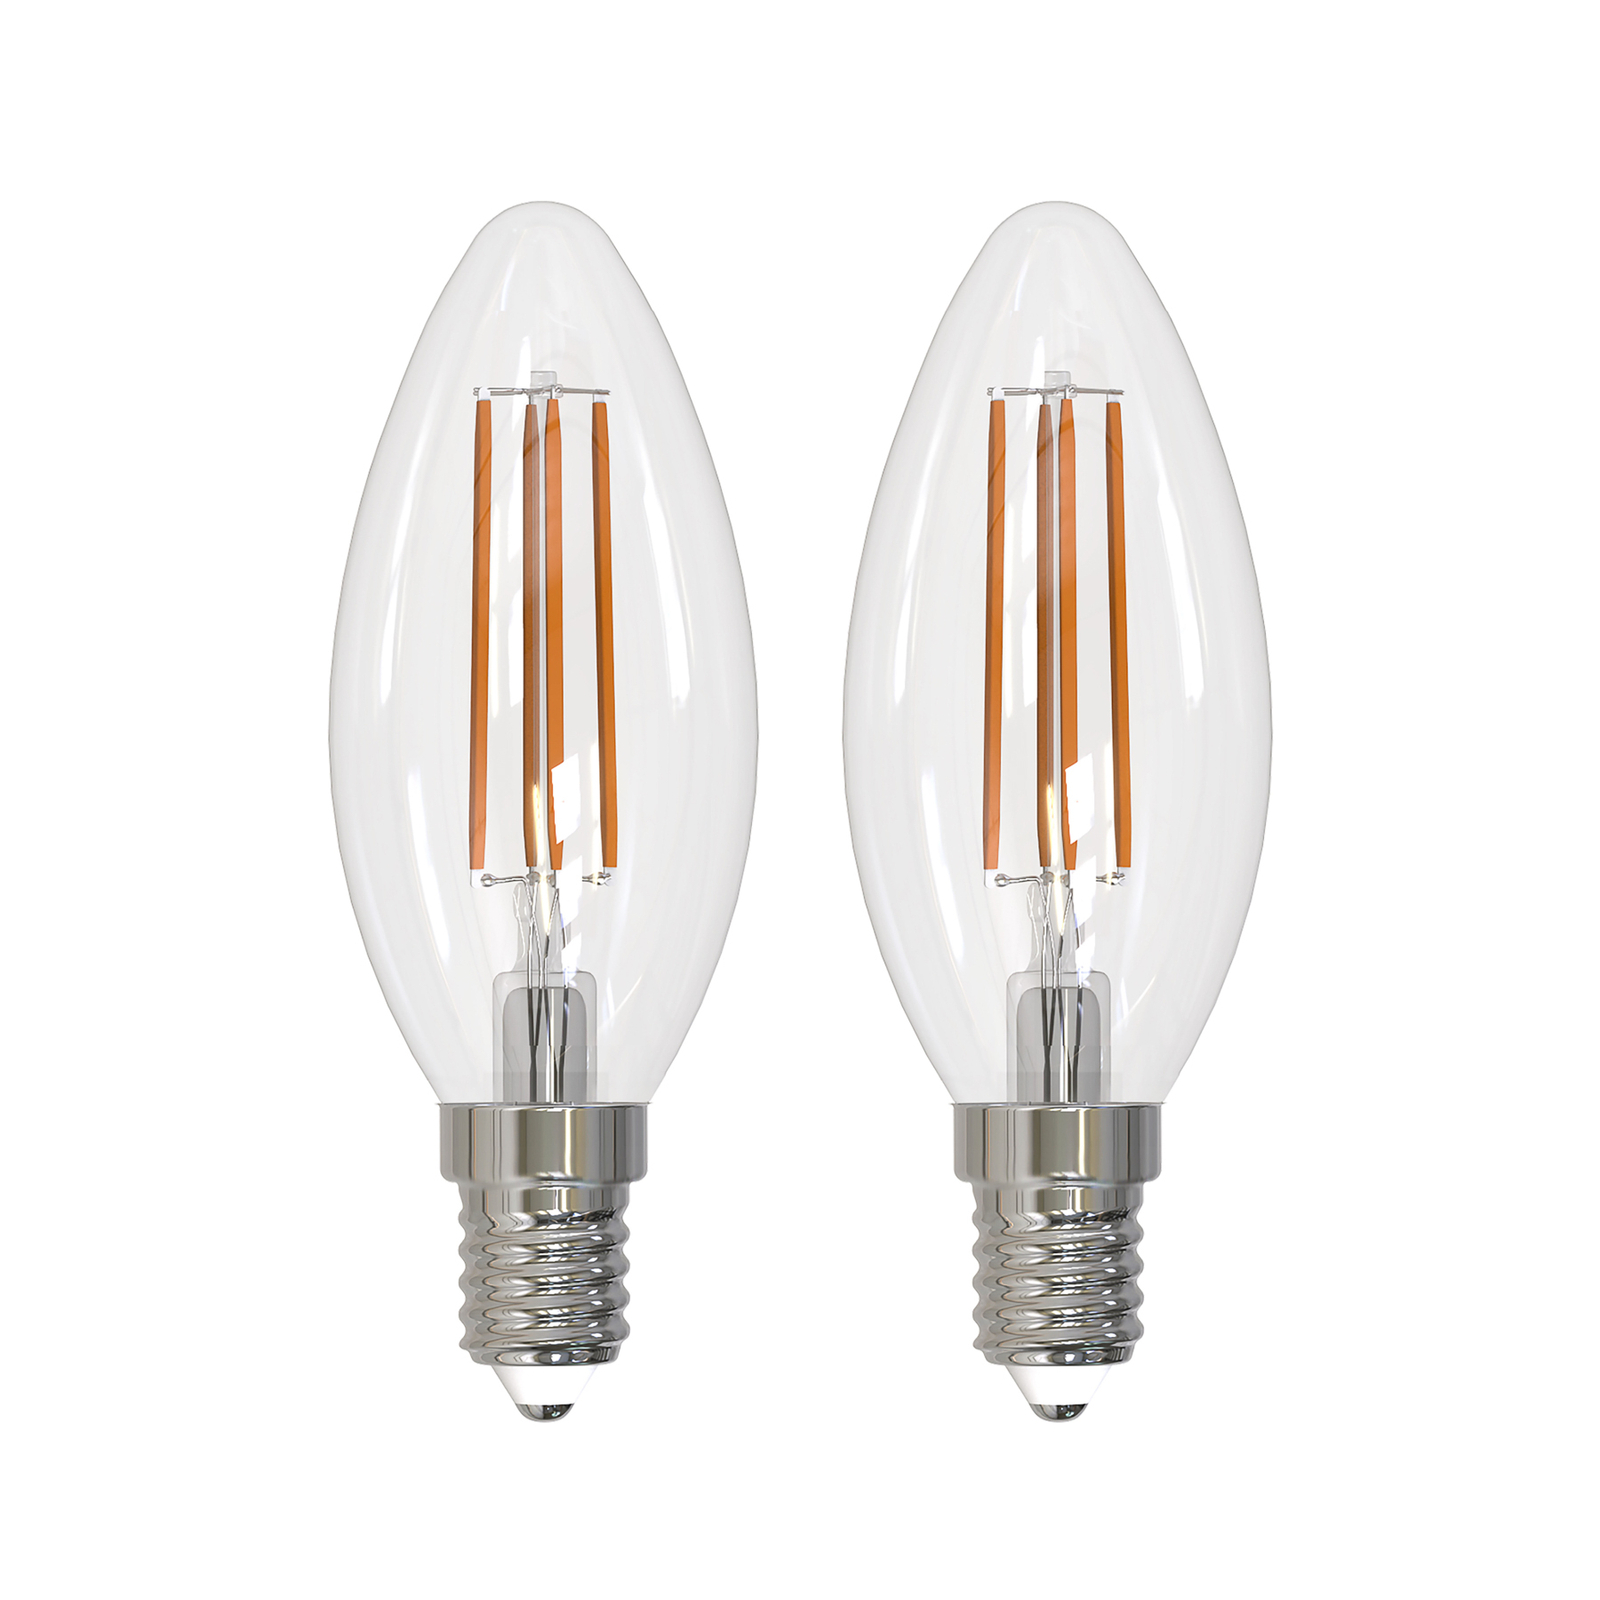 Arcchio lâmpada LED de incandescência E14 vela, conjunto de 2, 2700 K